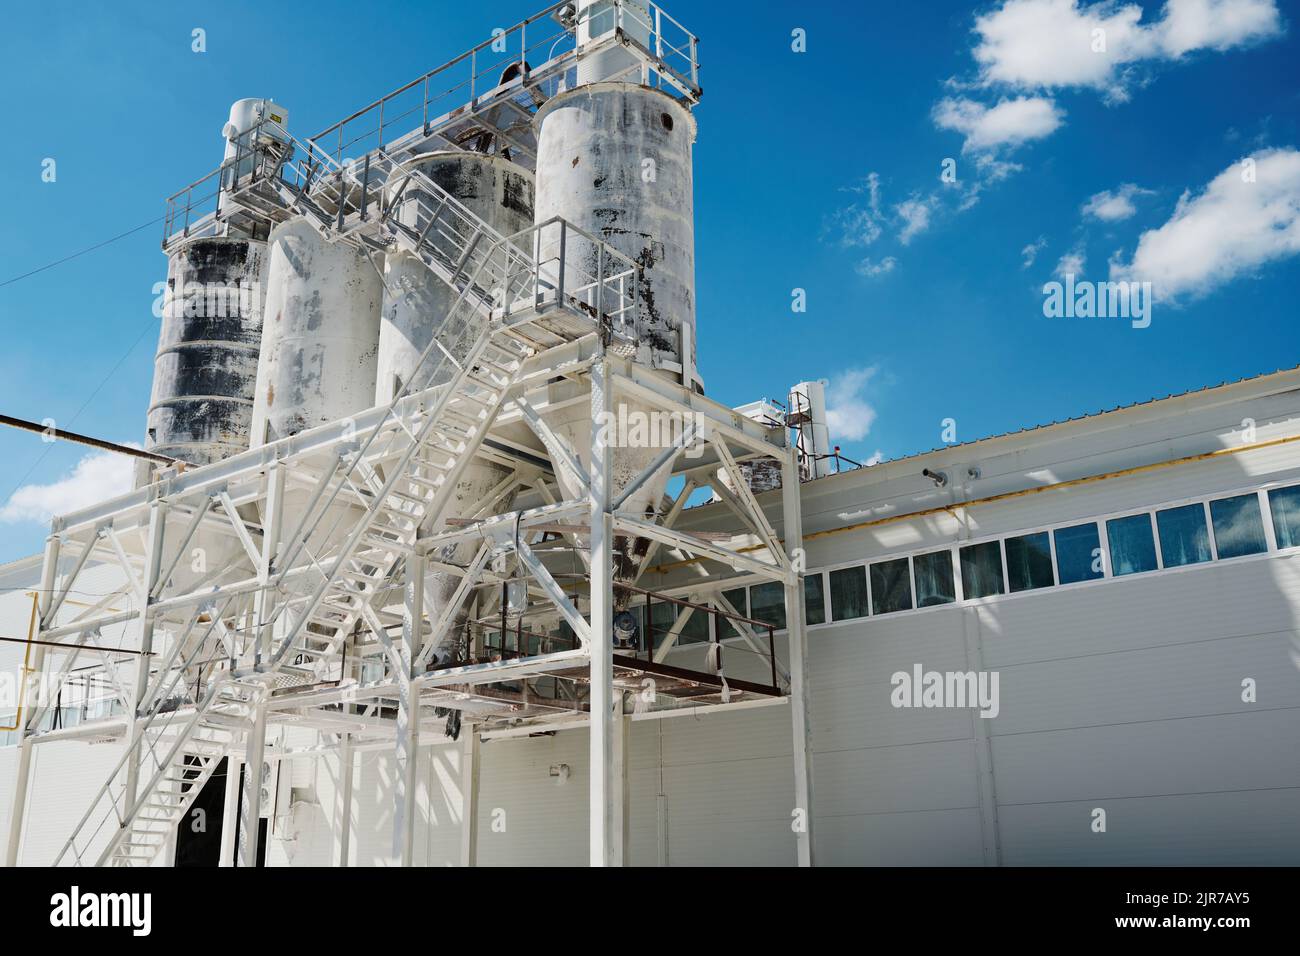 Enorme struttura metallica dipinta di bianco che è la costruzione di una fabbrica moderna o di impianti industriali che producono macchine o qualche altro materiale Foto Stock